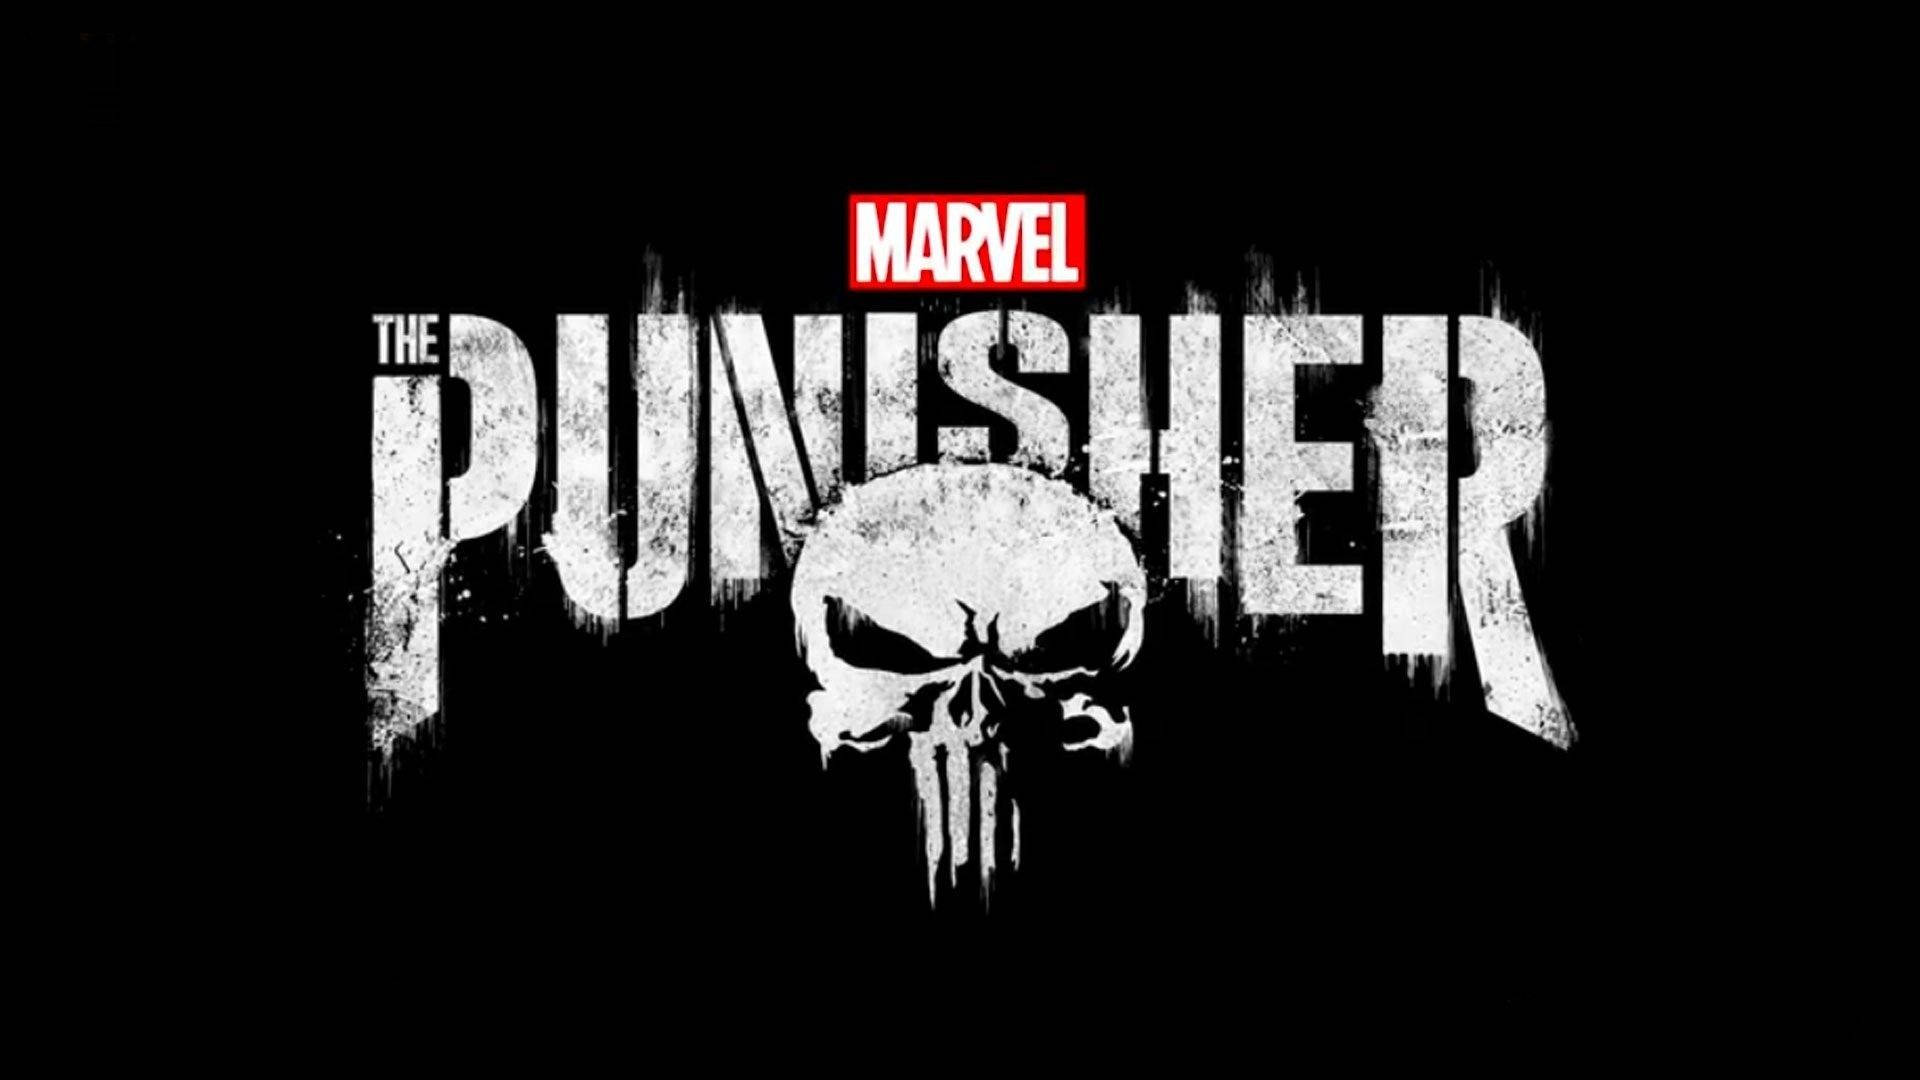 Marvel The Punisher Logo Wallpaper